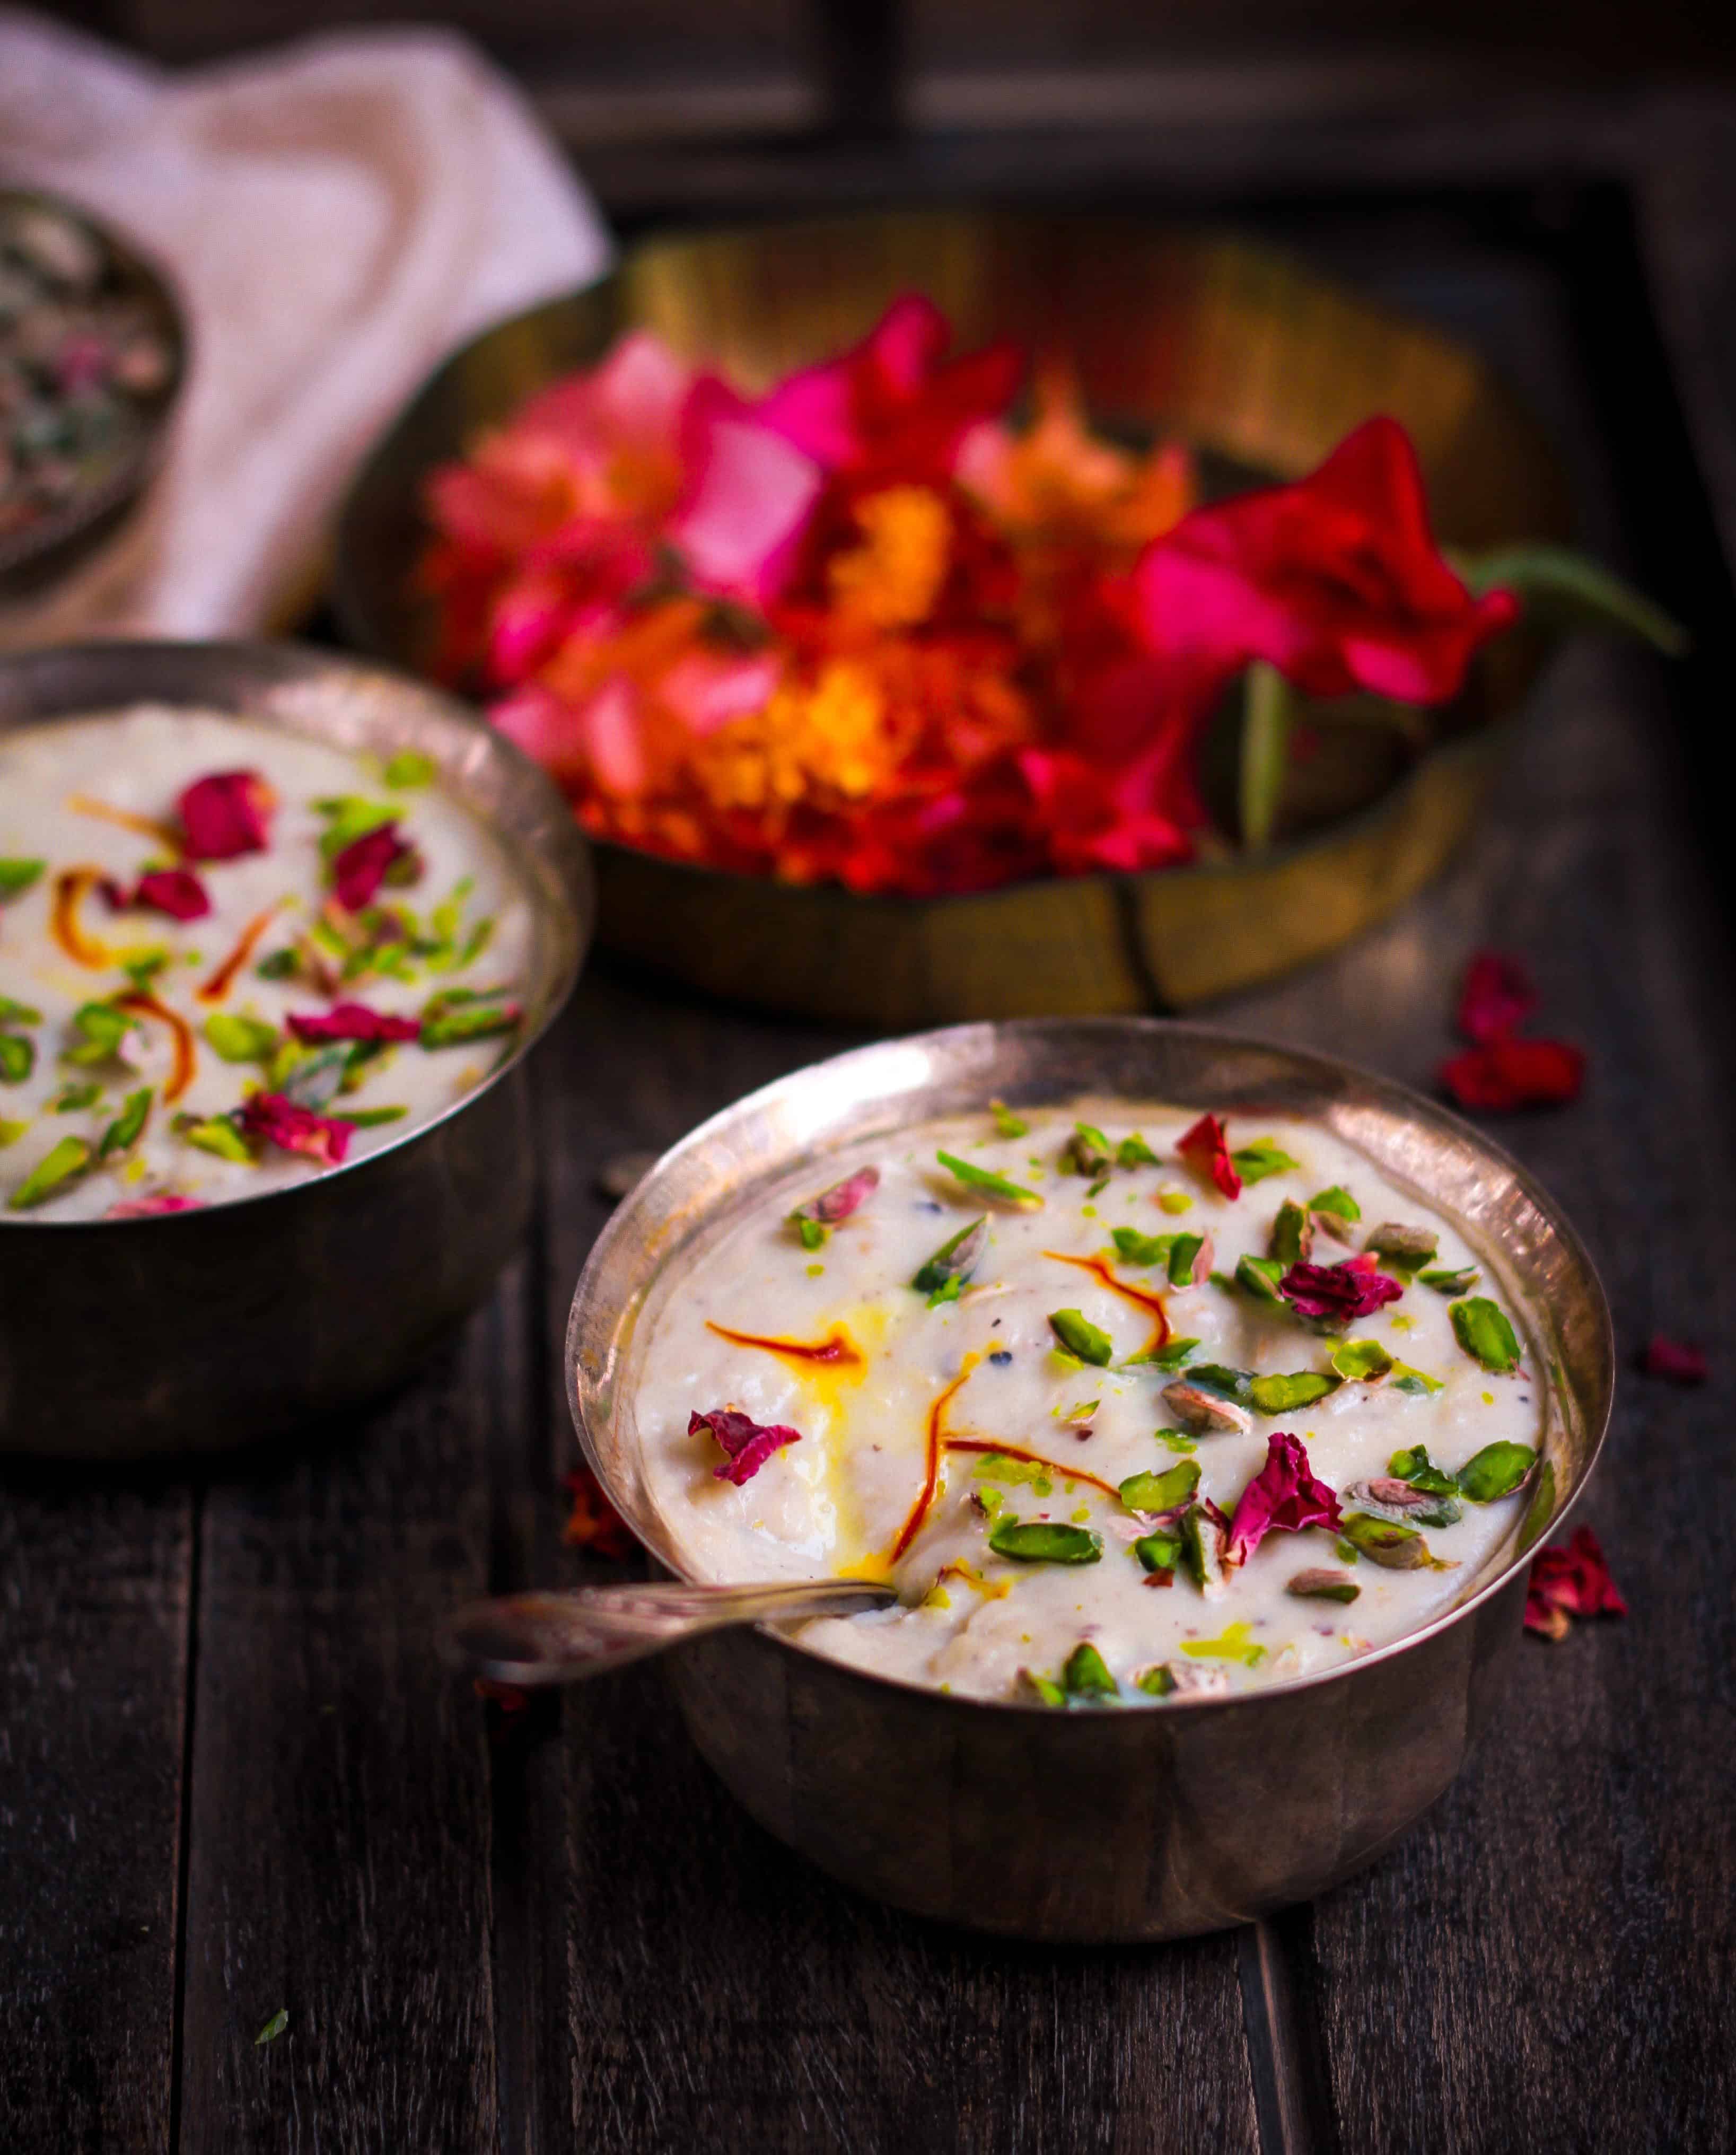 Makhane Ki Kheer | Vrat ka khana | Indian fasting food